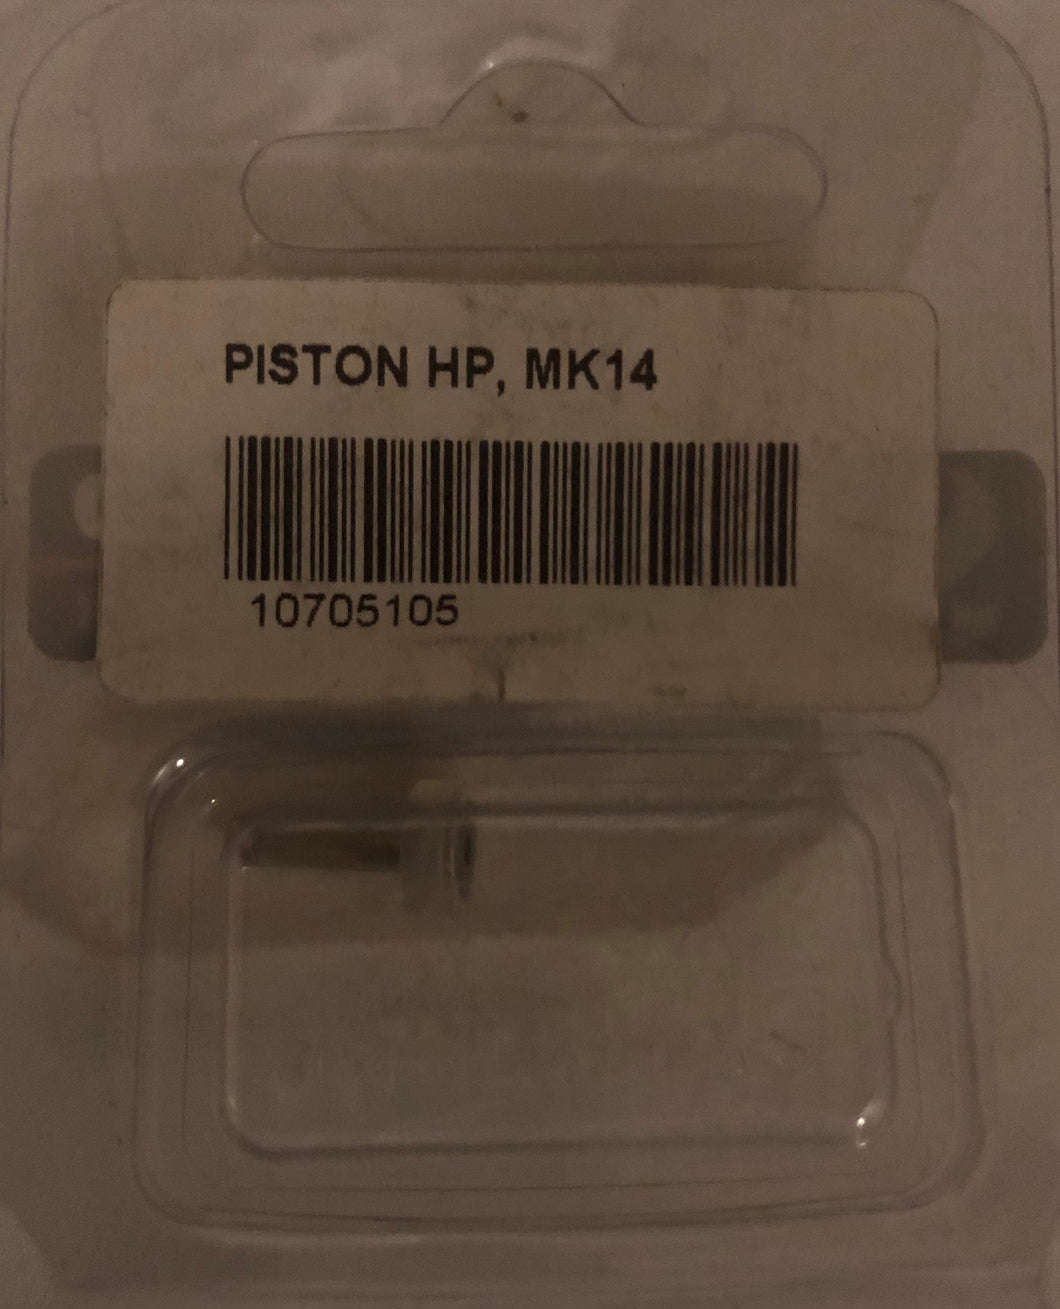 Scuba pro MK 14 Piston HP 107.051.05